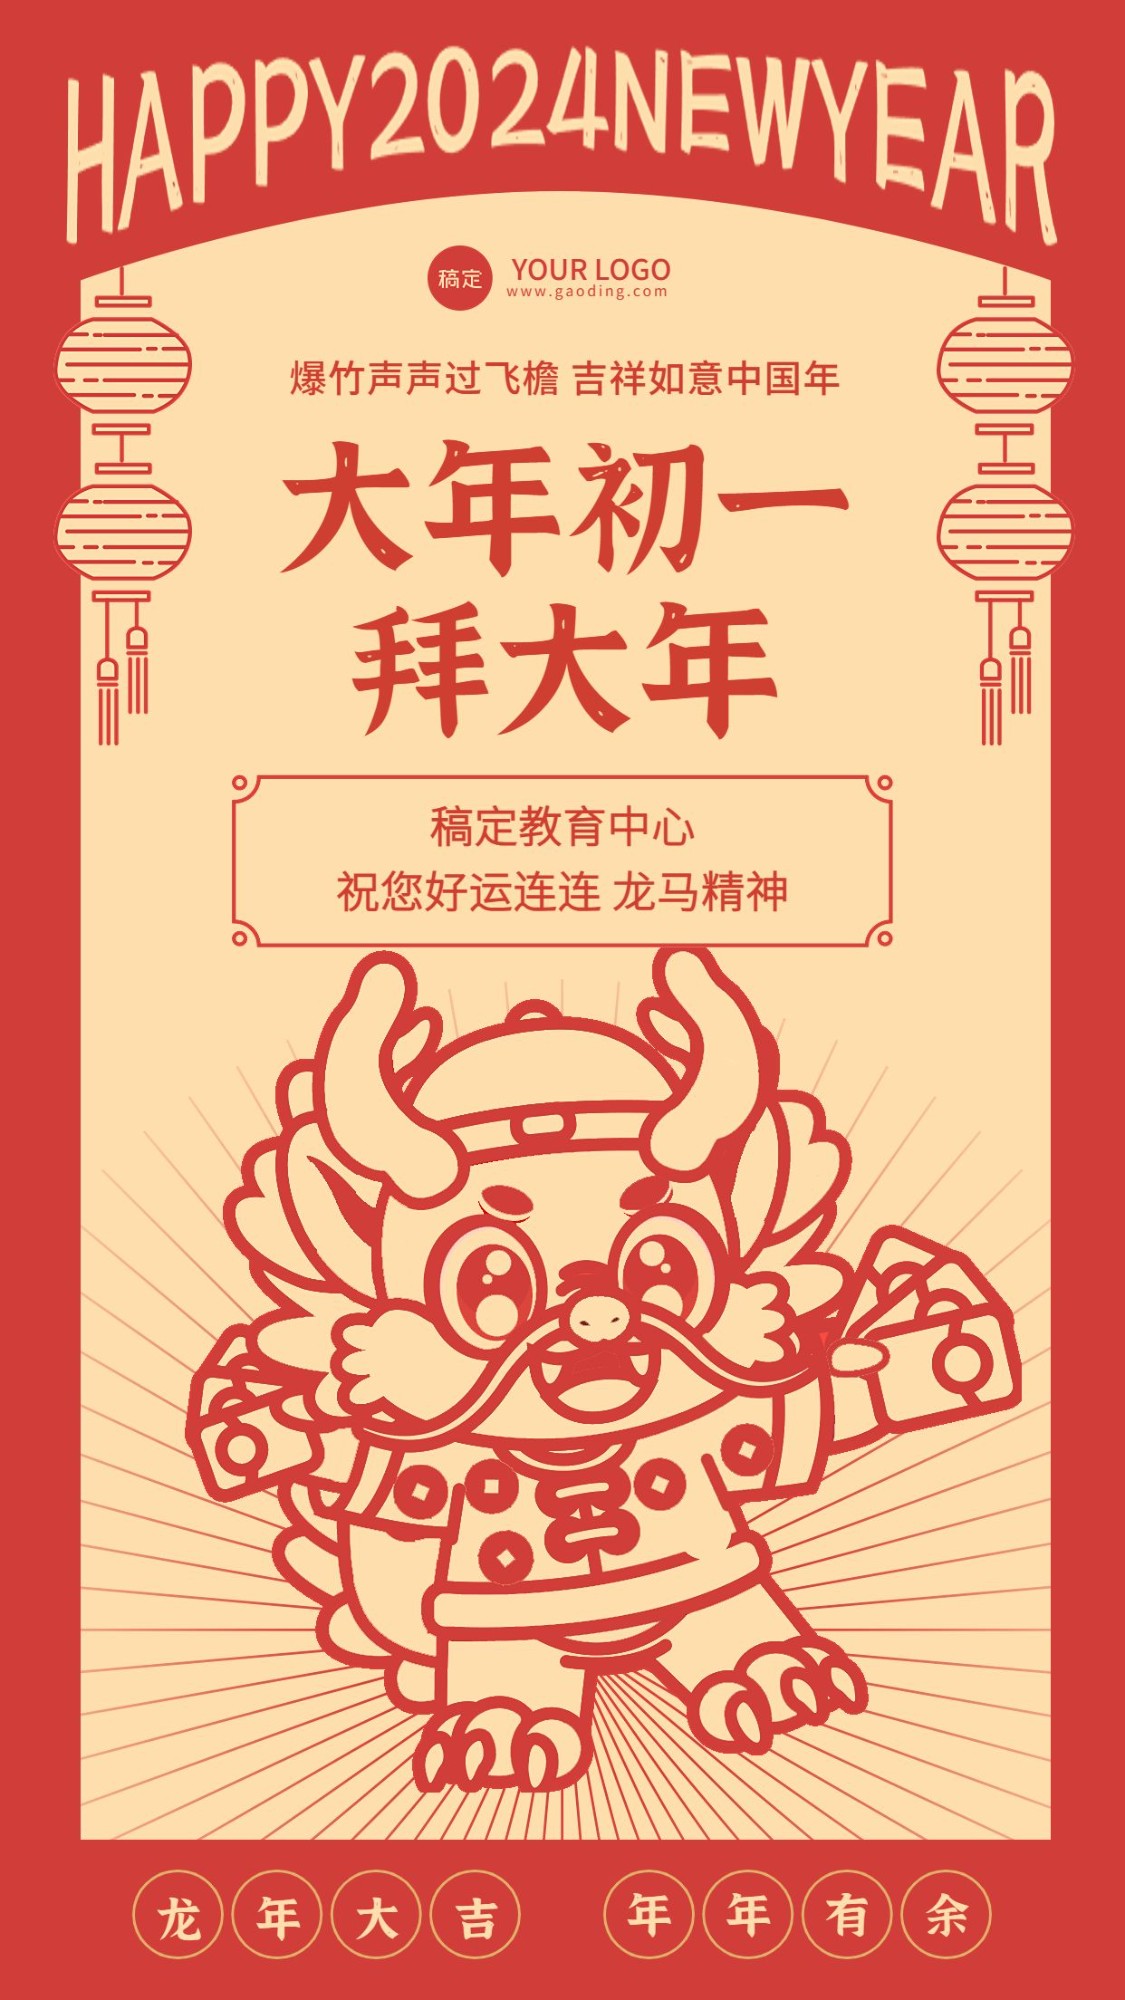 教育培训春节祝福拜年祝福中国风插画手机海报